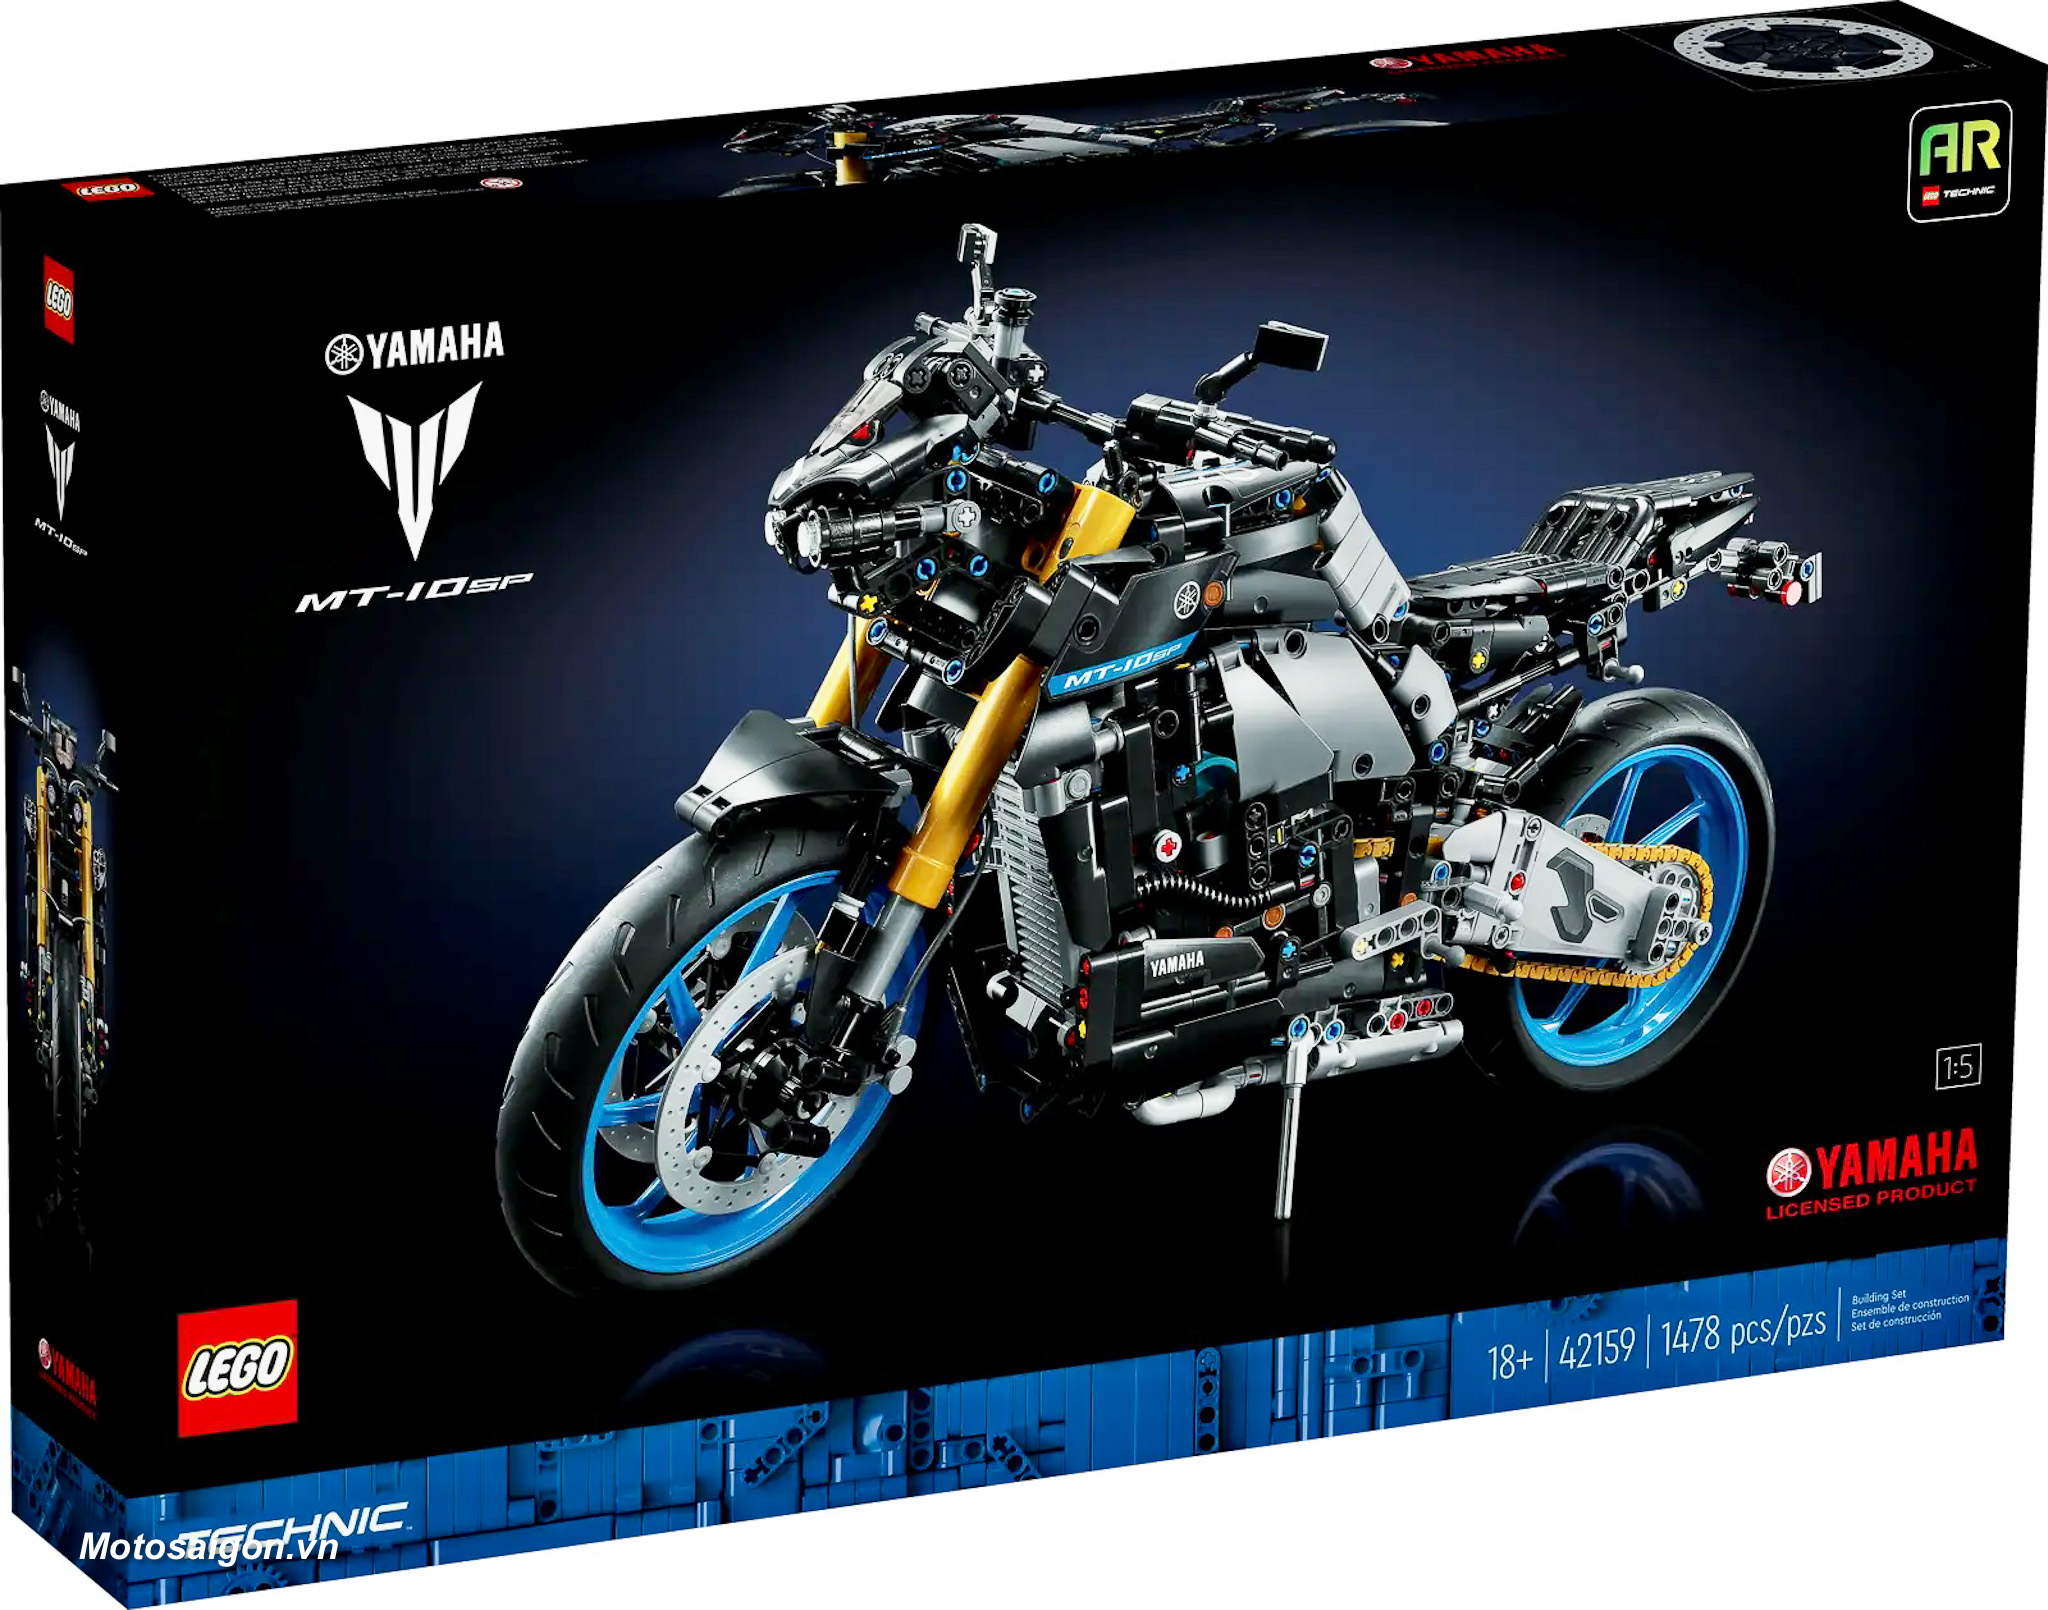 Xe mô hình Yamaha MT-10 SP sắp được Lego ra mắt kèm giá bán